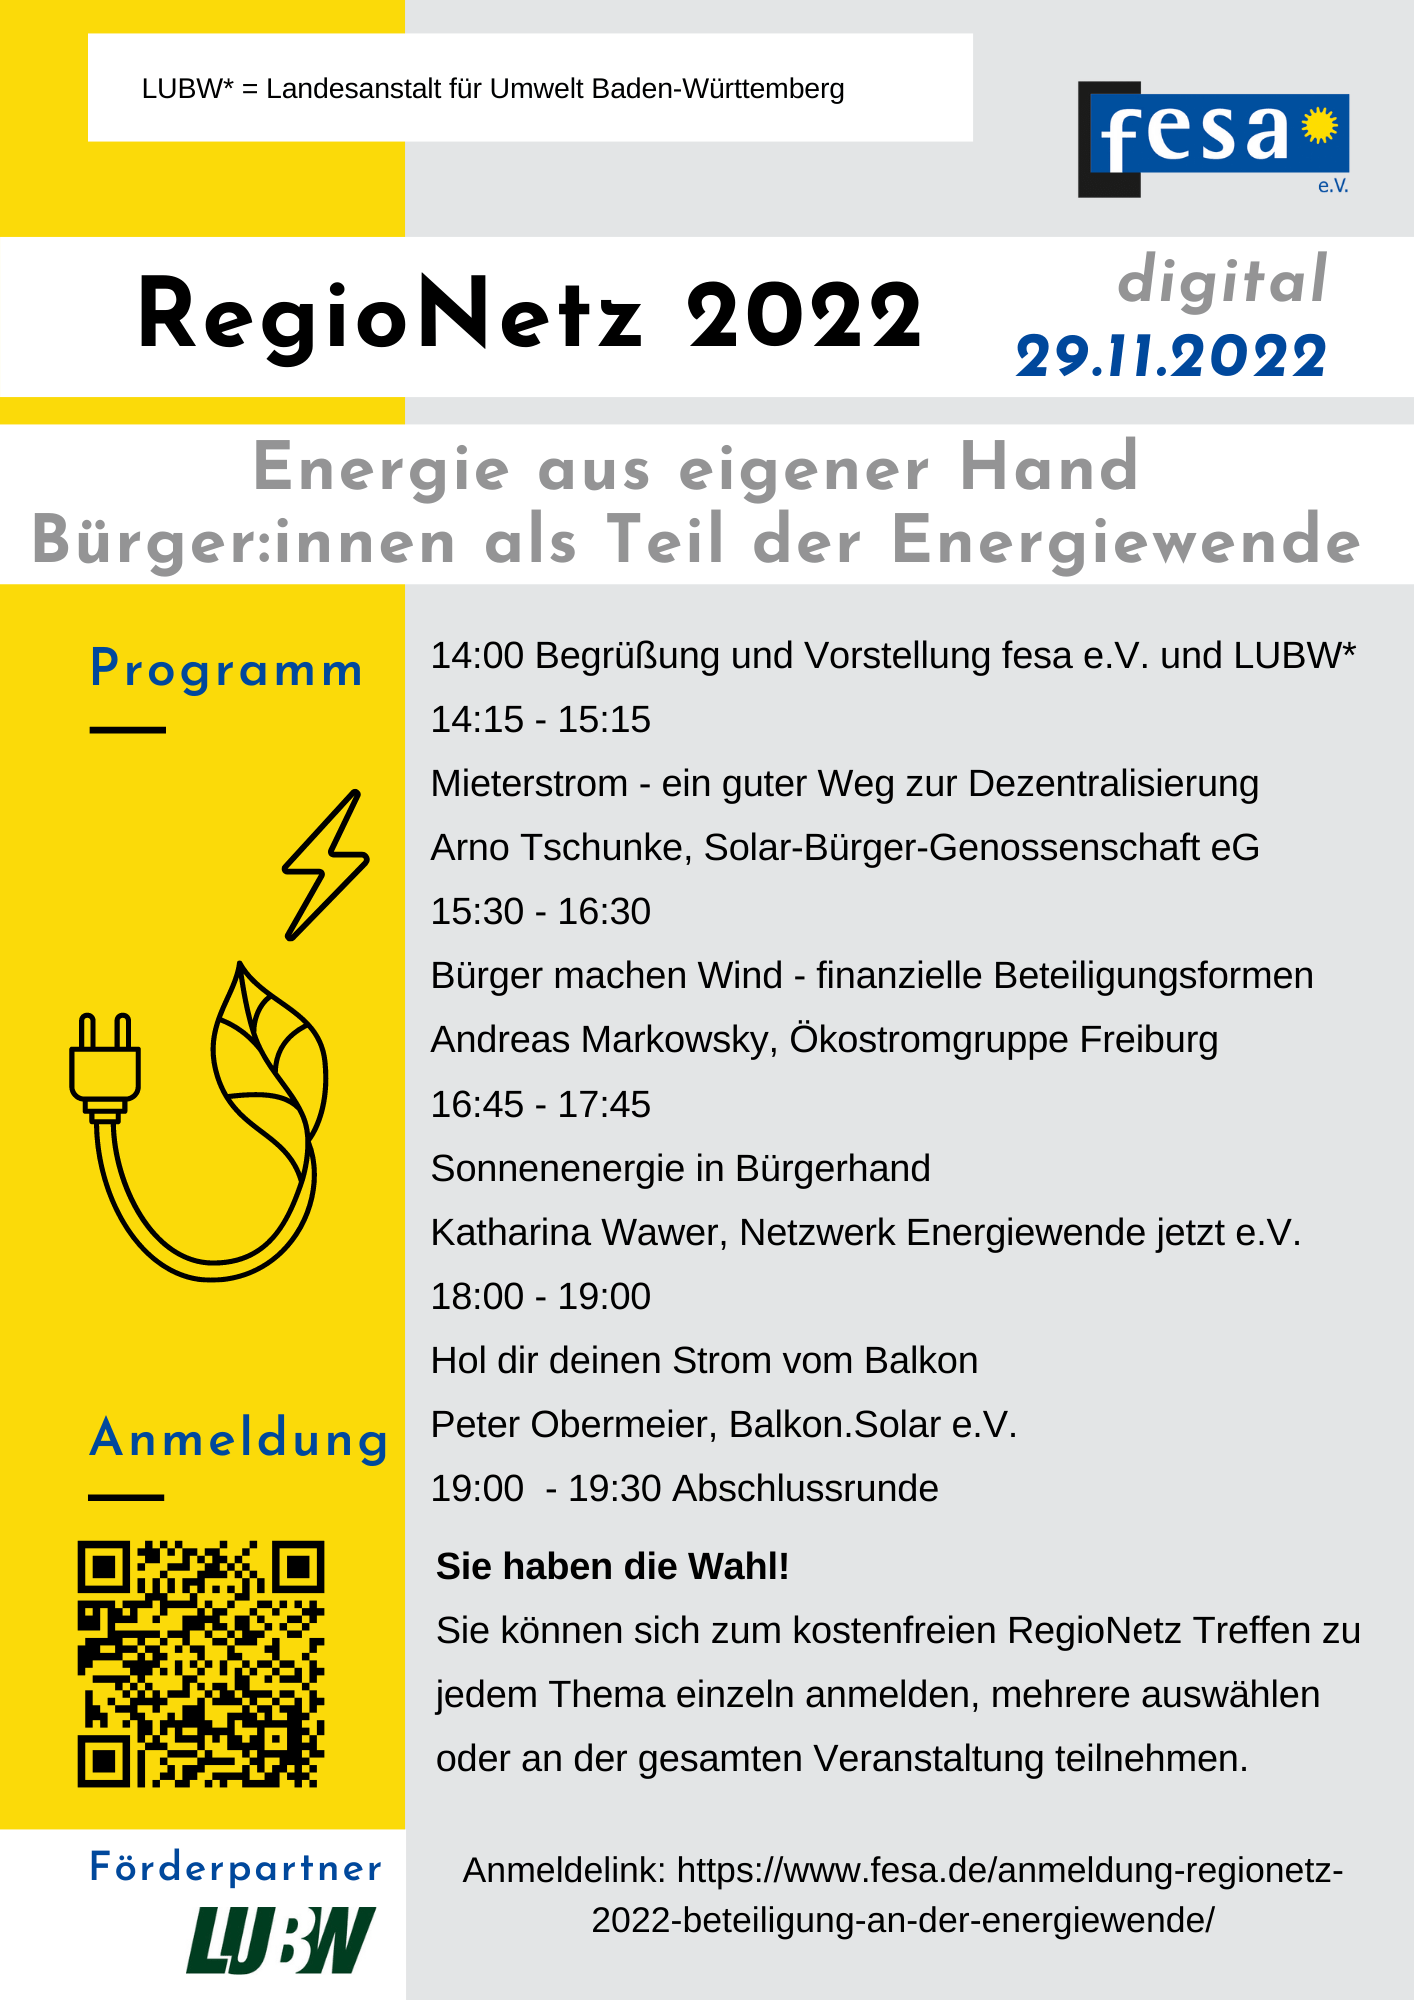 RegioNetz 2022 Energie aus eigener Hand Programm und Anmeldung 